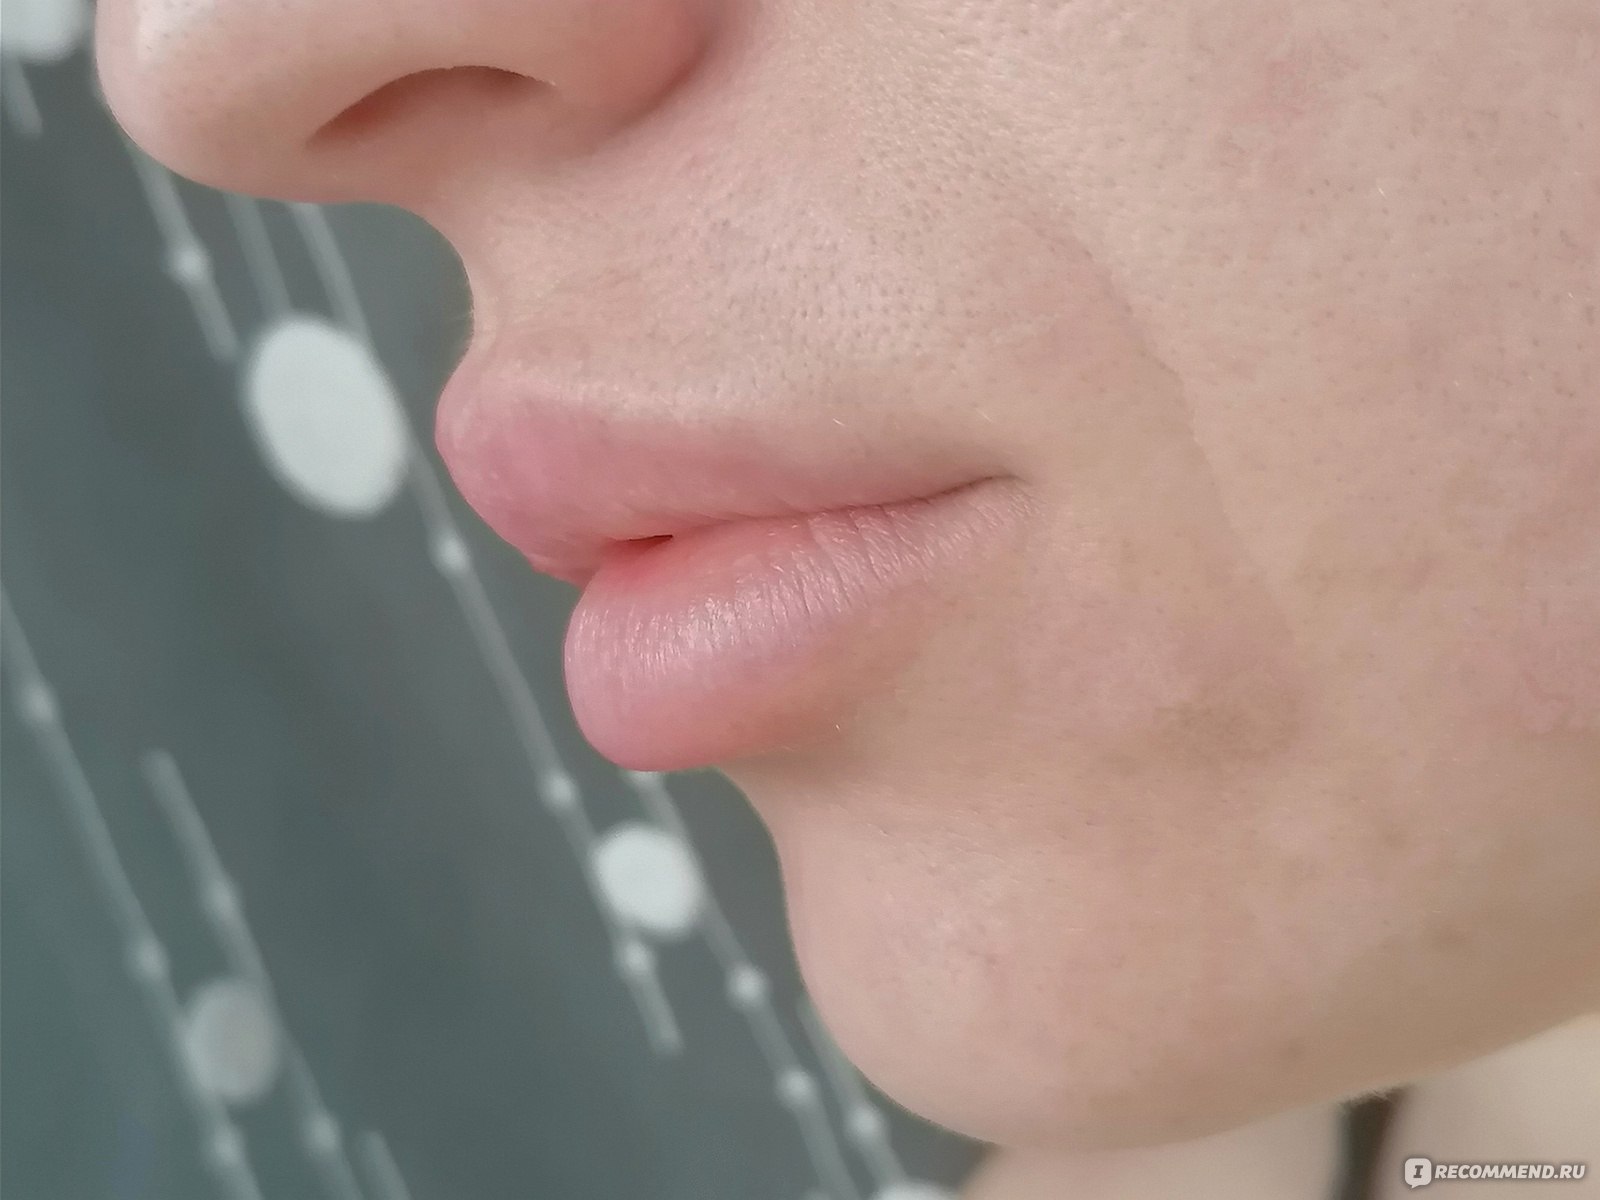 Увеличение / Аугментация губ с помощью препарата гиалуроновой кислоты фото